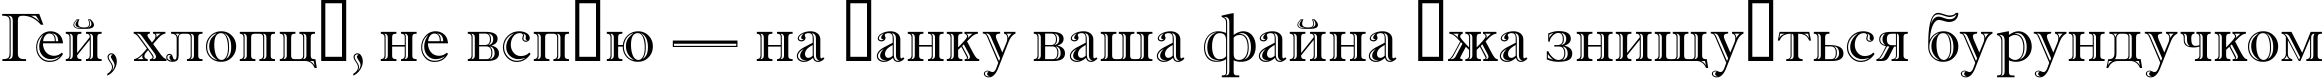 Пример написания шрифтом a_AntiqueGr текста на украинском